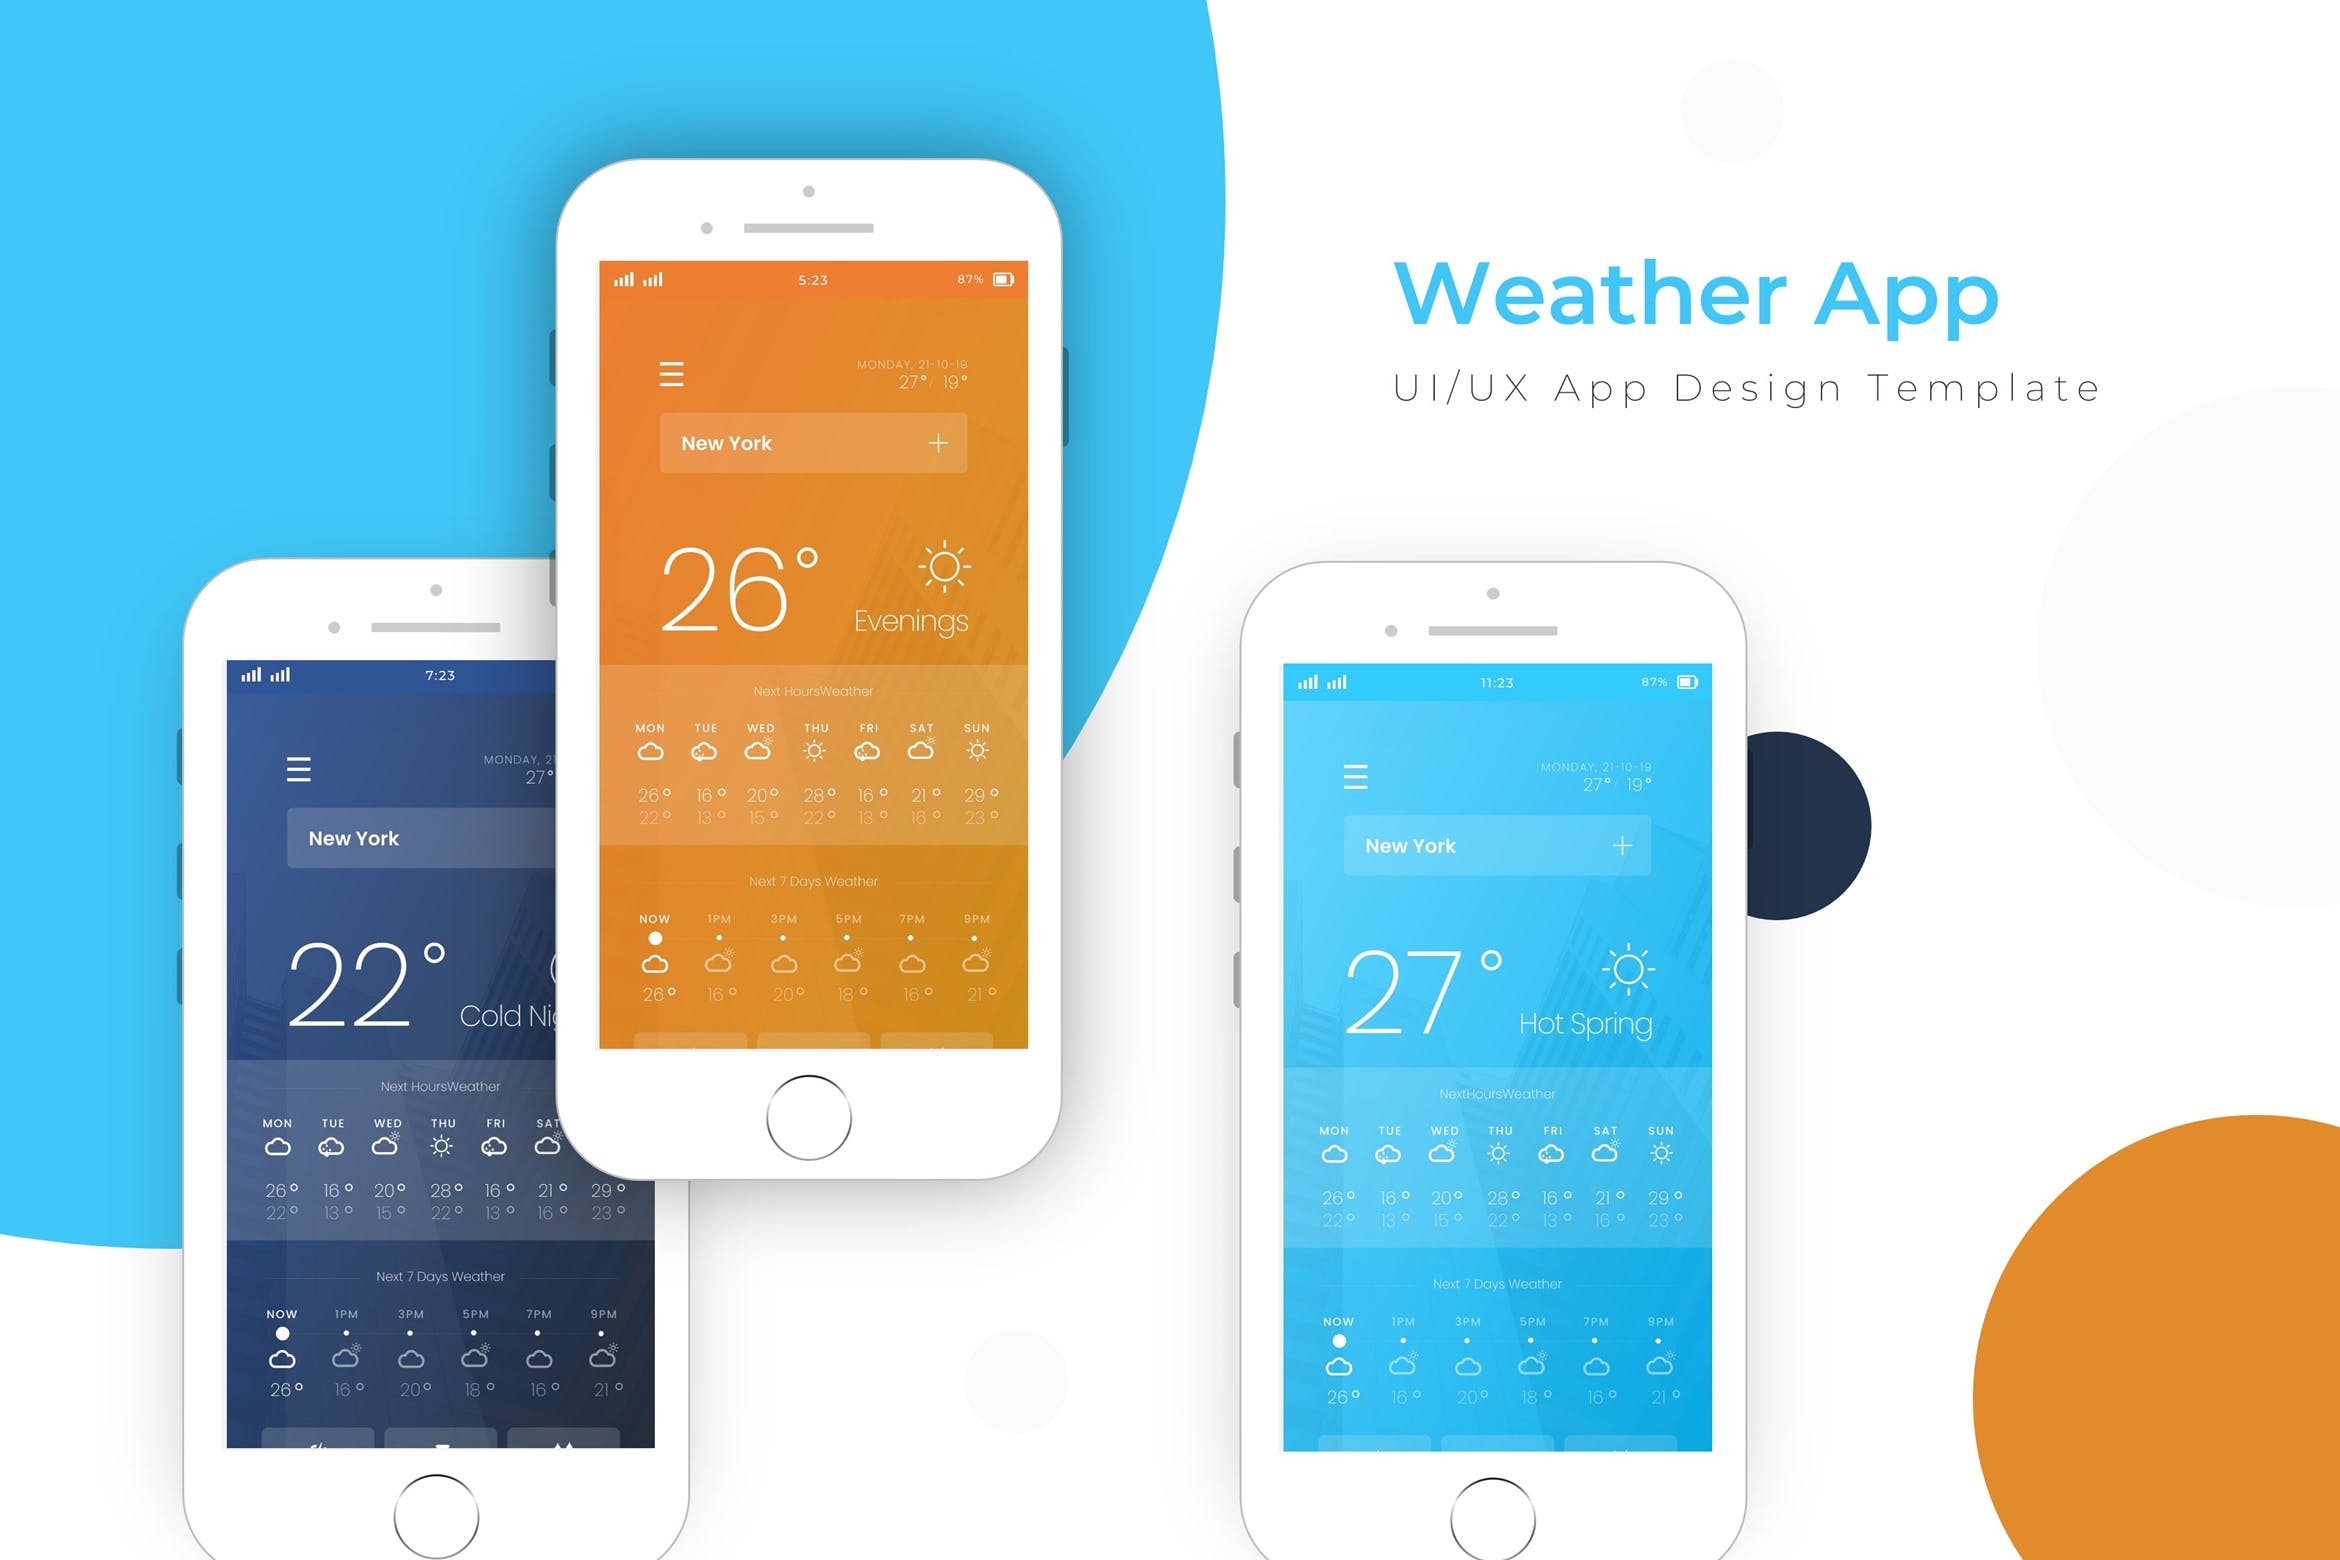 天气预报APP应用界面设计非凡图库精选模板 Weather Template | App Design Template插图